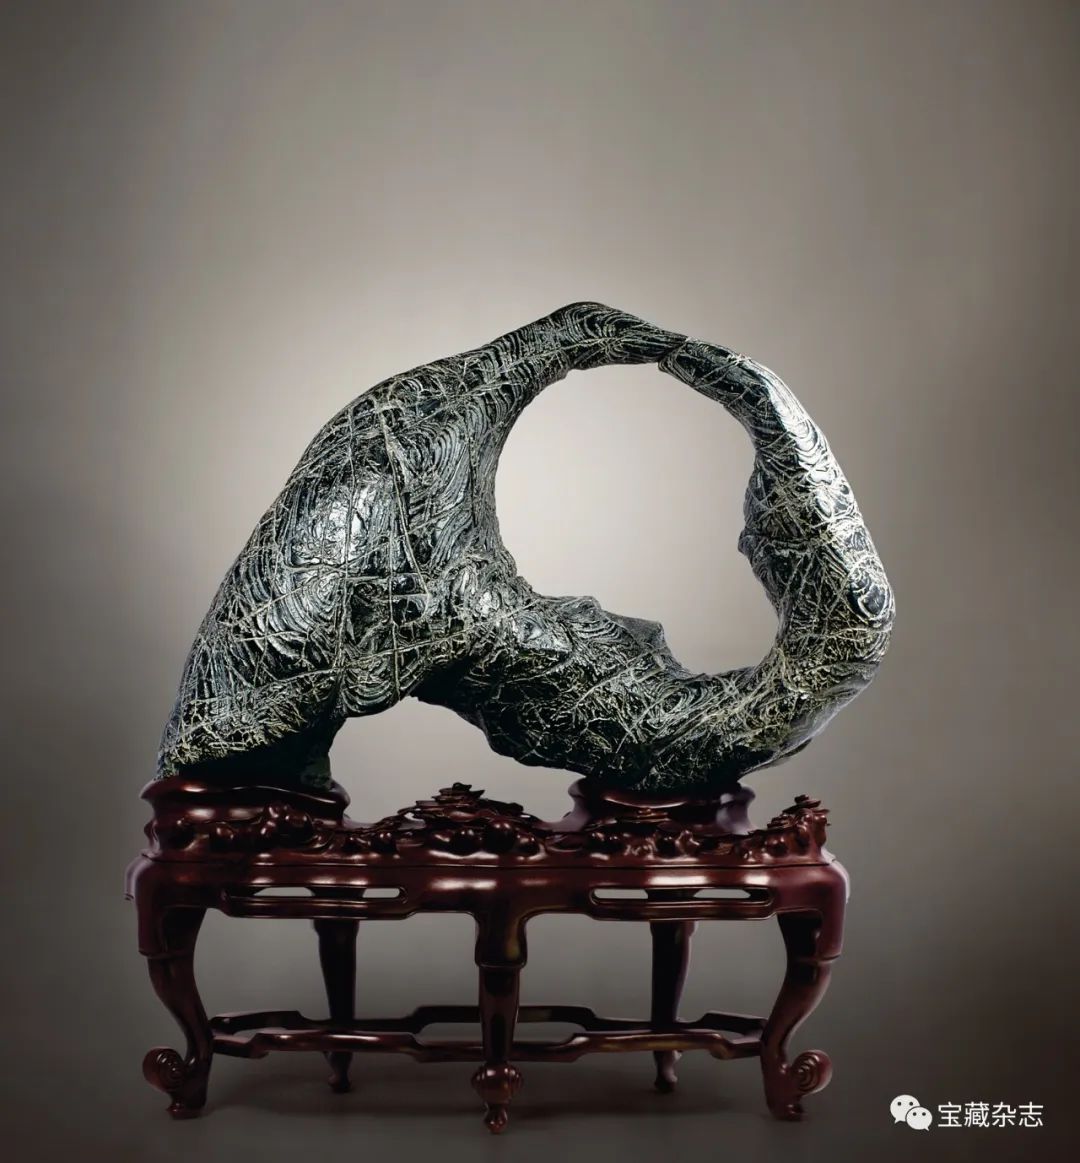 宏道——赏石艺术的根本